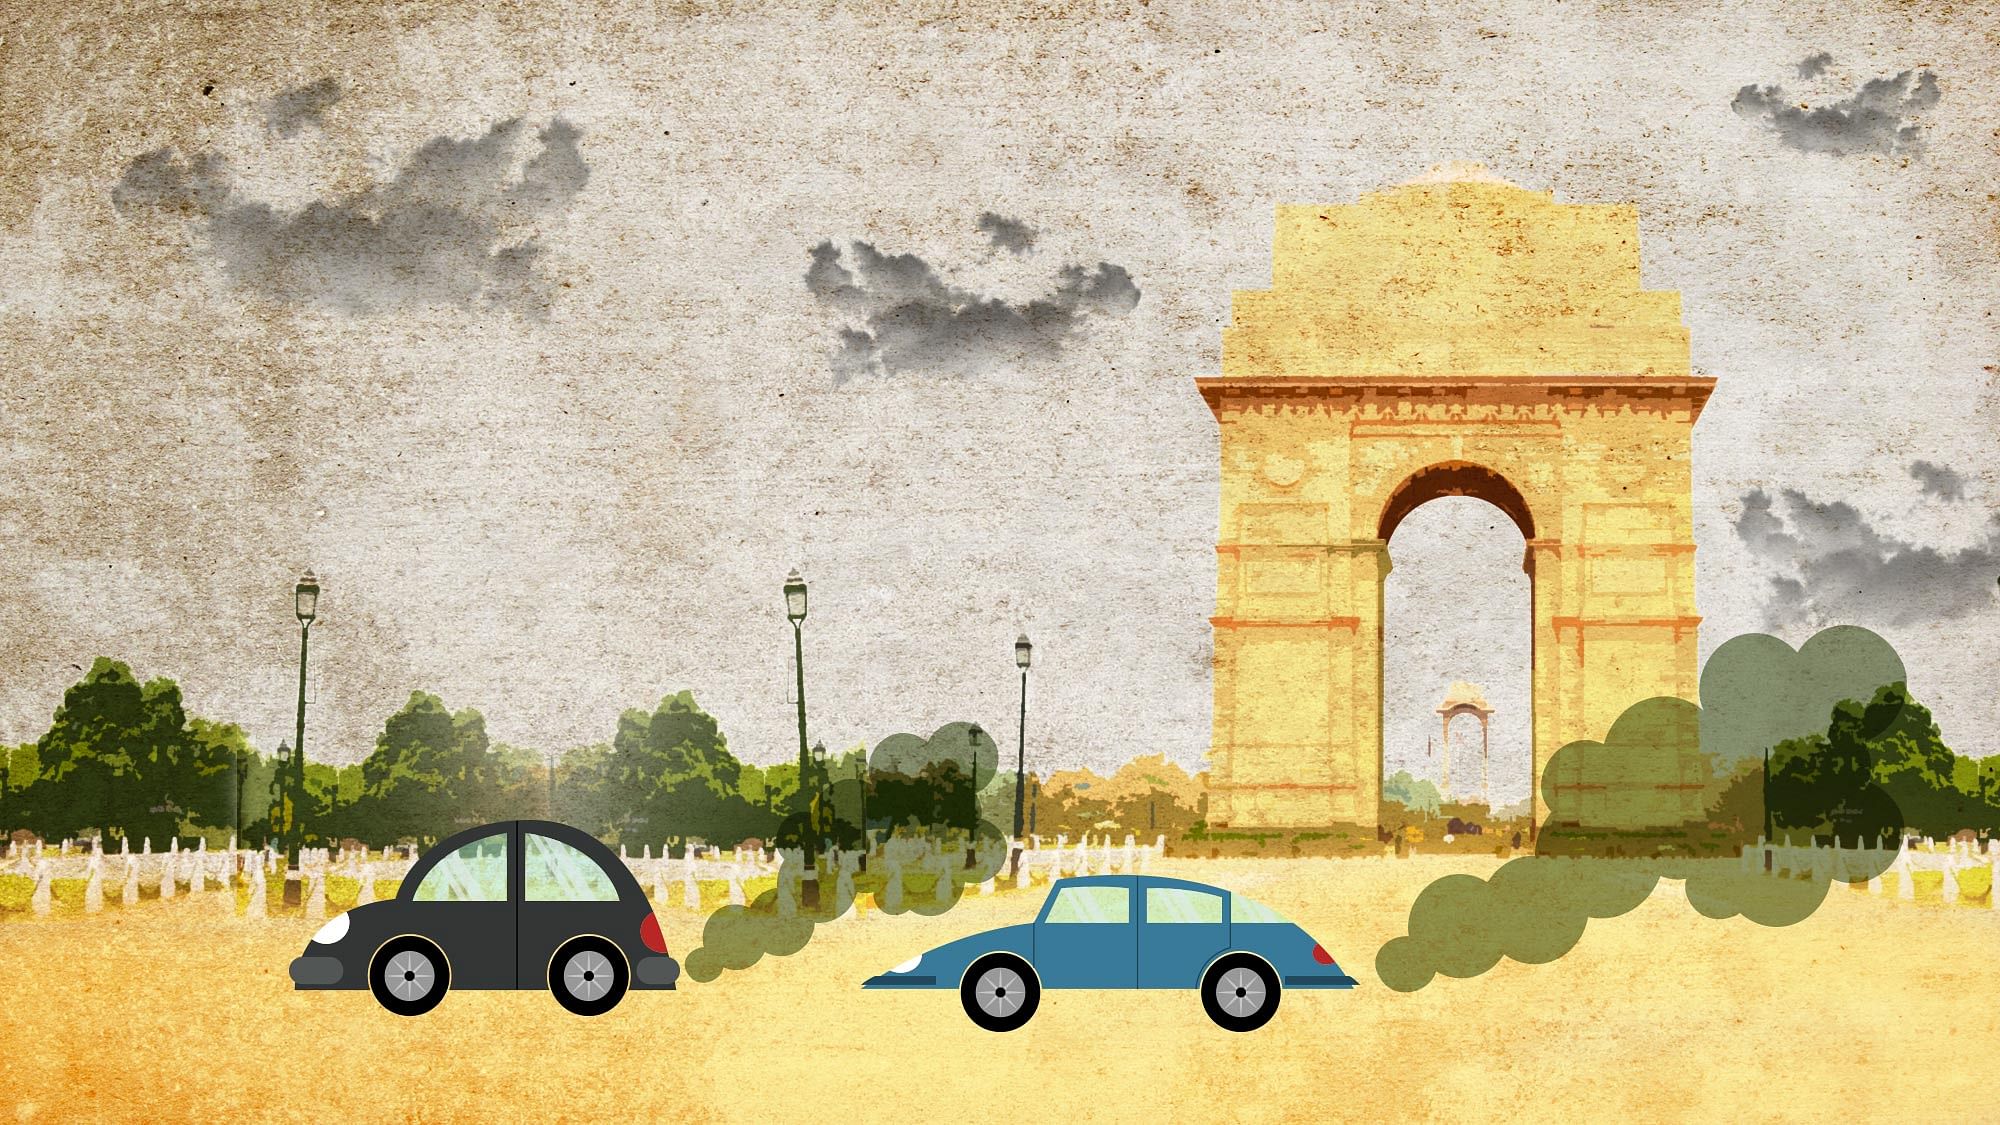 द क्विंट से खास बातचीत में सम-विषम फॉर्मूले से दिल्ली को होने वाले फायदे गिना रही हैं सीएसई की अनुमिता रॉय चौधरी.&nbsp;